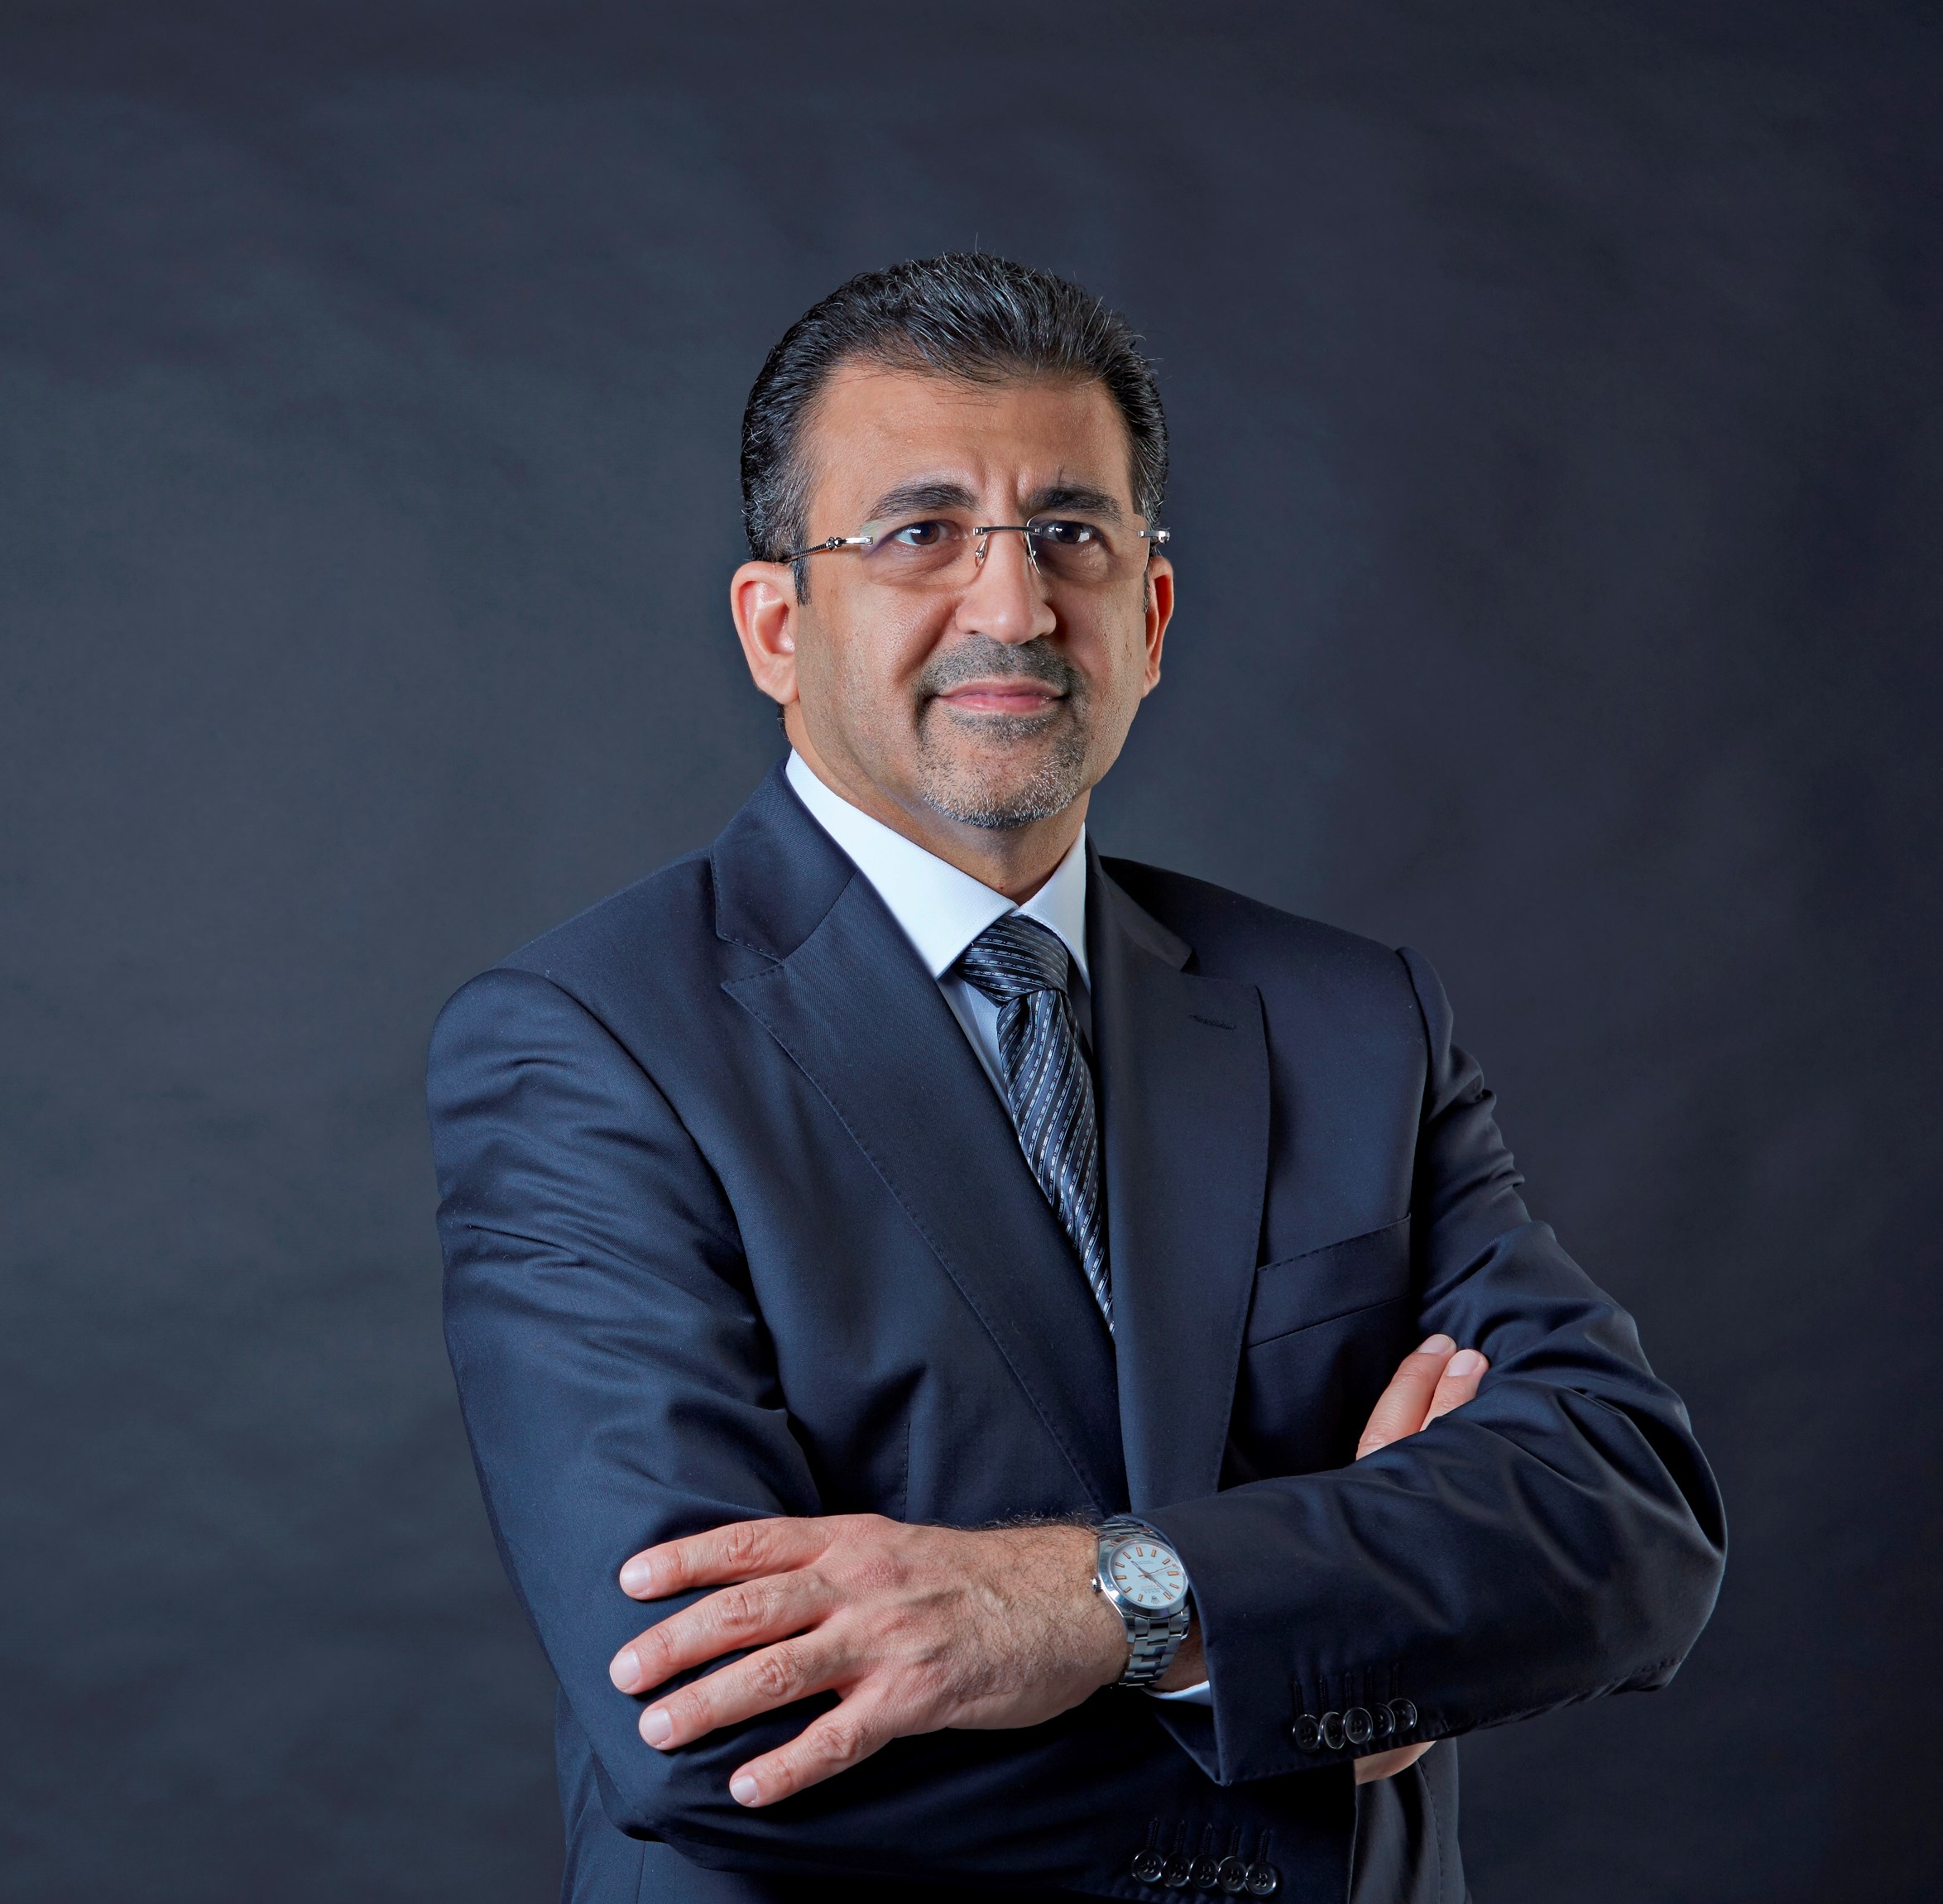 هيثم المصري، الرئيس التنفيذي لشركة "إنتو كابيتال"